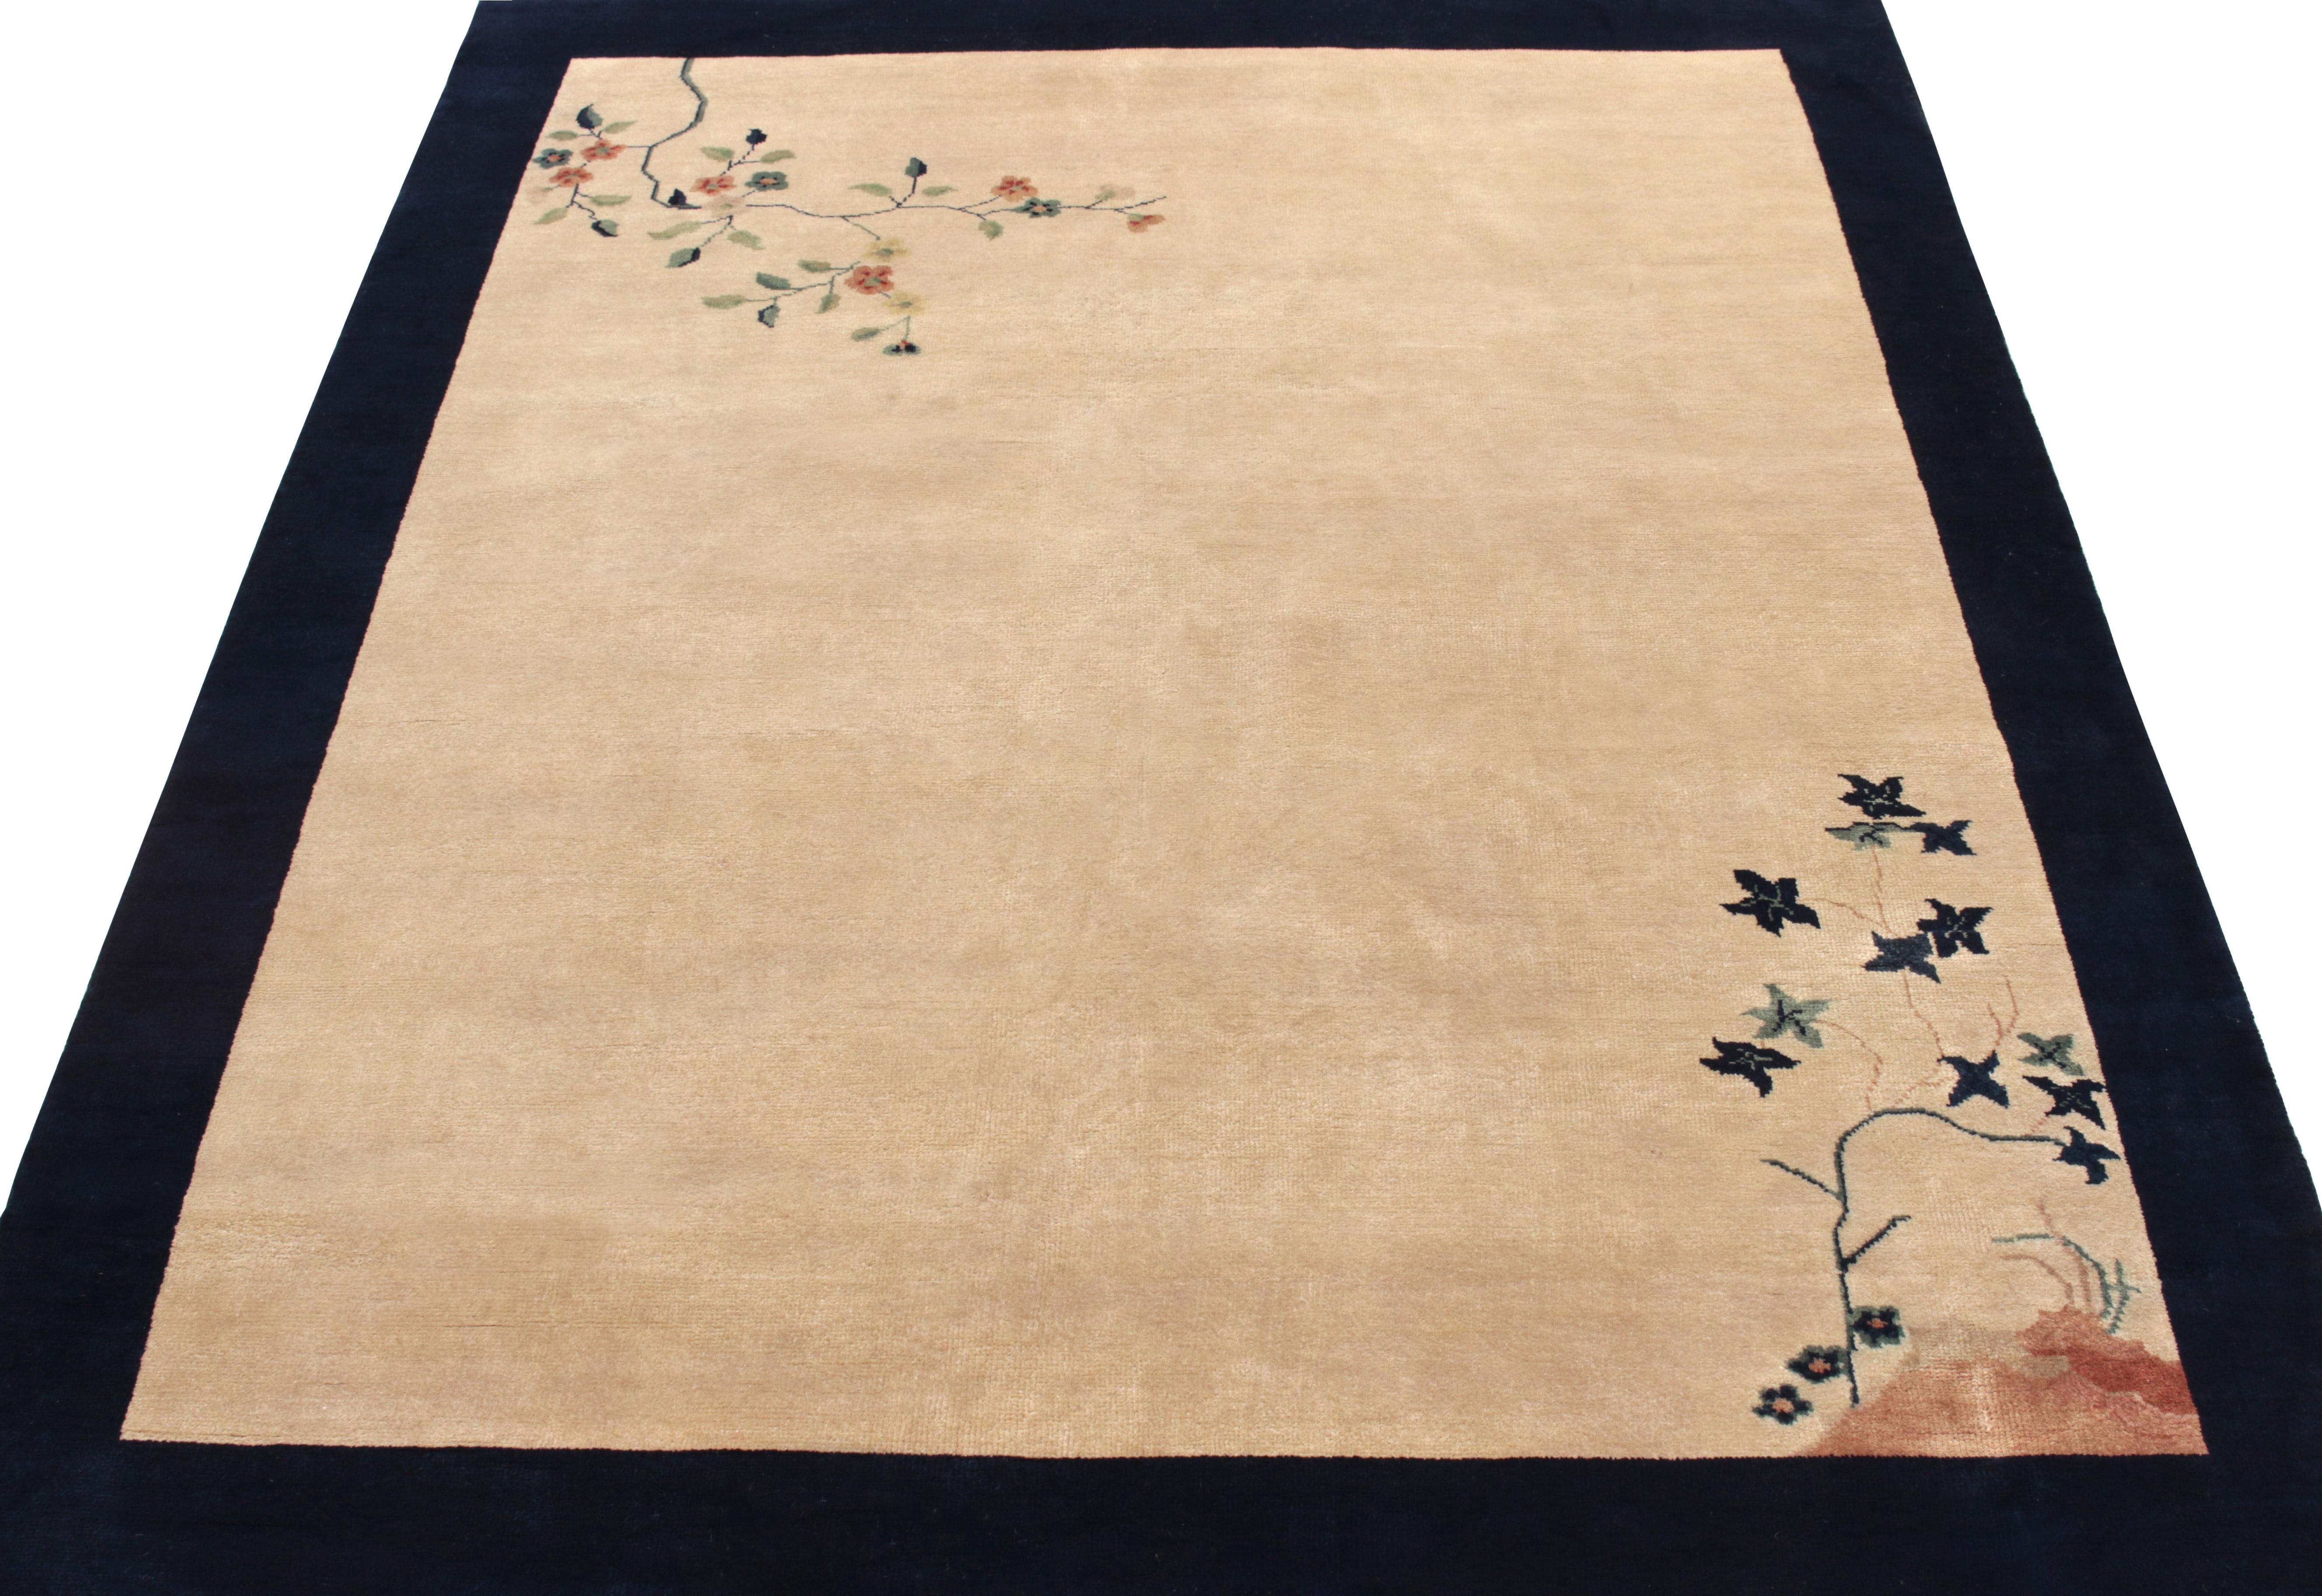 Dieser 5x8 große Vintage-Teppich, der die Schönheit des minimalistischen orientalischen Stils preist, ist eine Ode an die chinesischen Art-Déco-Teppiche der 1920er Jahre. Er zeigt blühende Zweige in Teal, Mandarine und Hellblau, die sich im